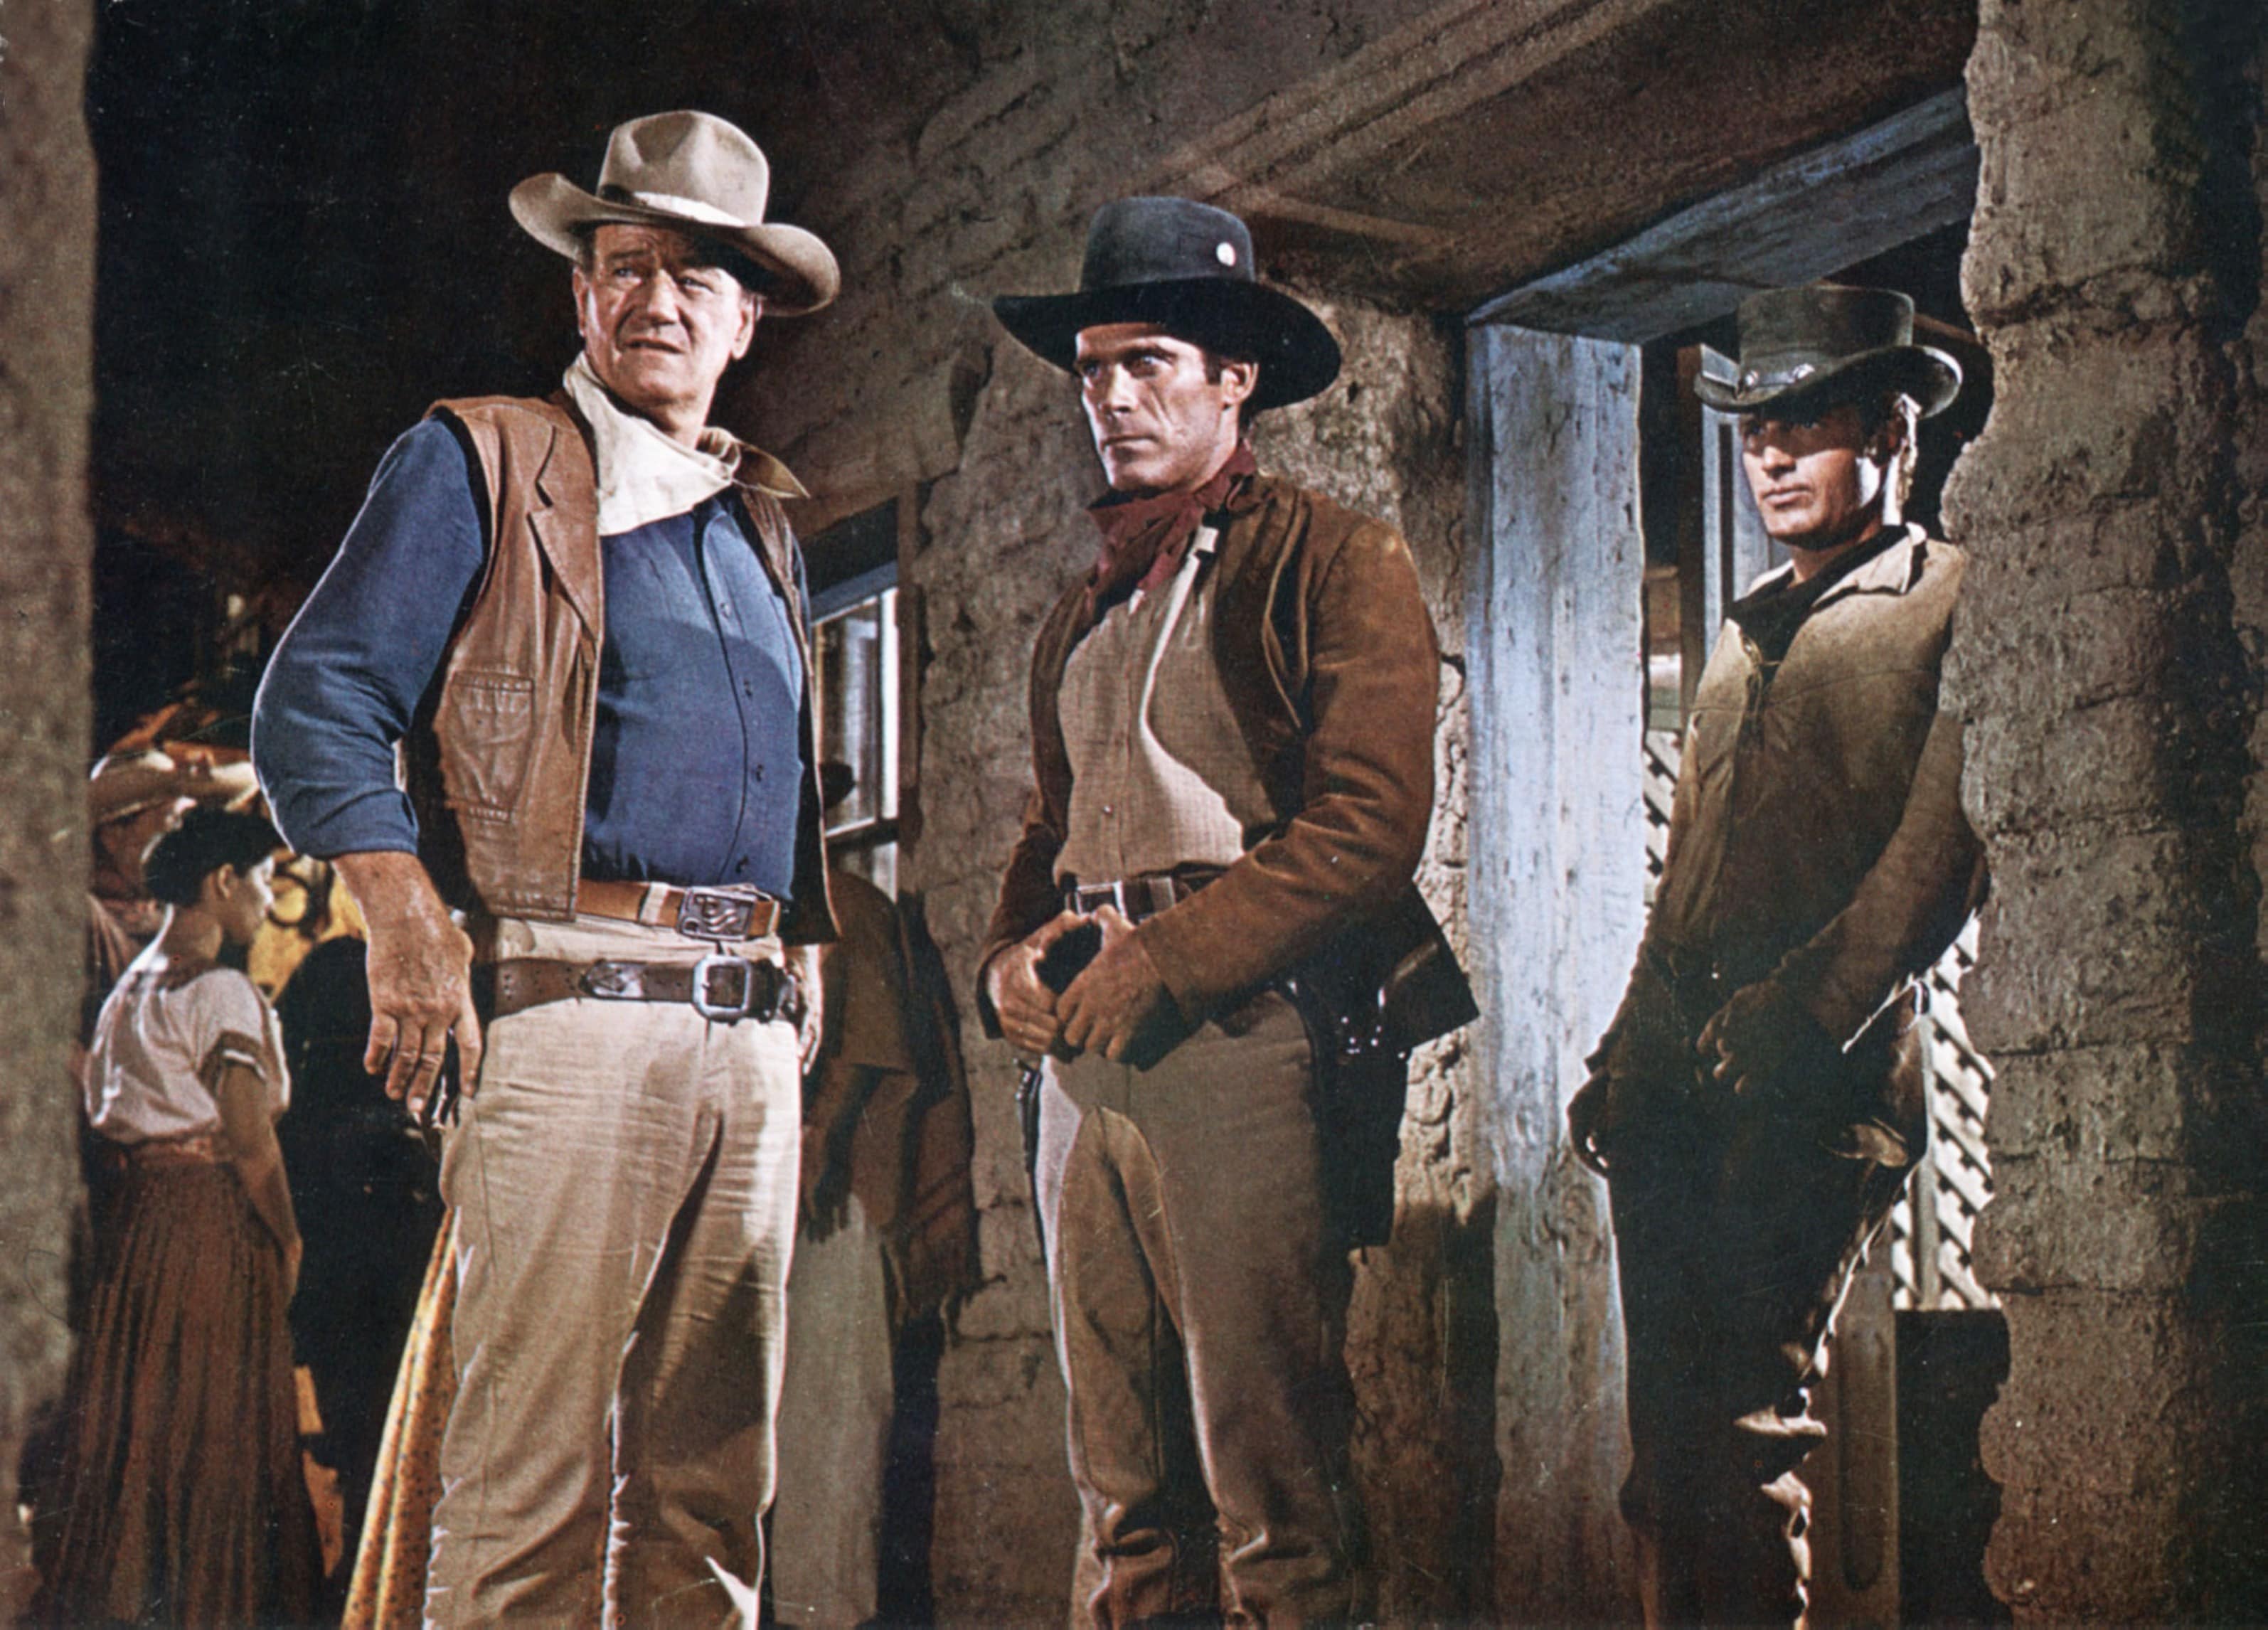 Una scena di "El Dorado" (1966) con John Wayne. Regia di Haward Hawks